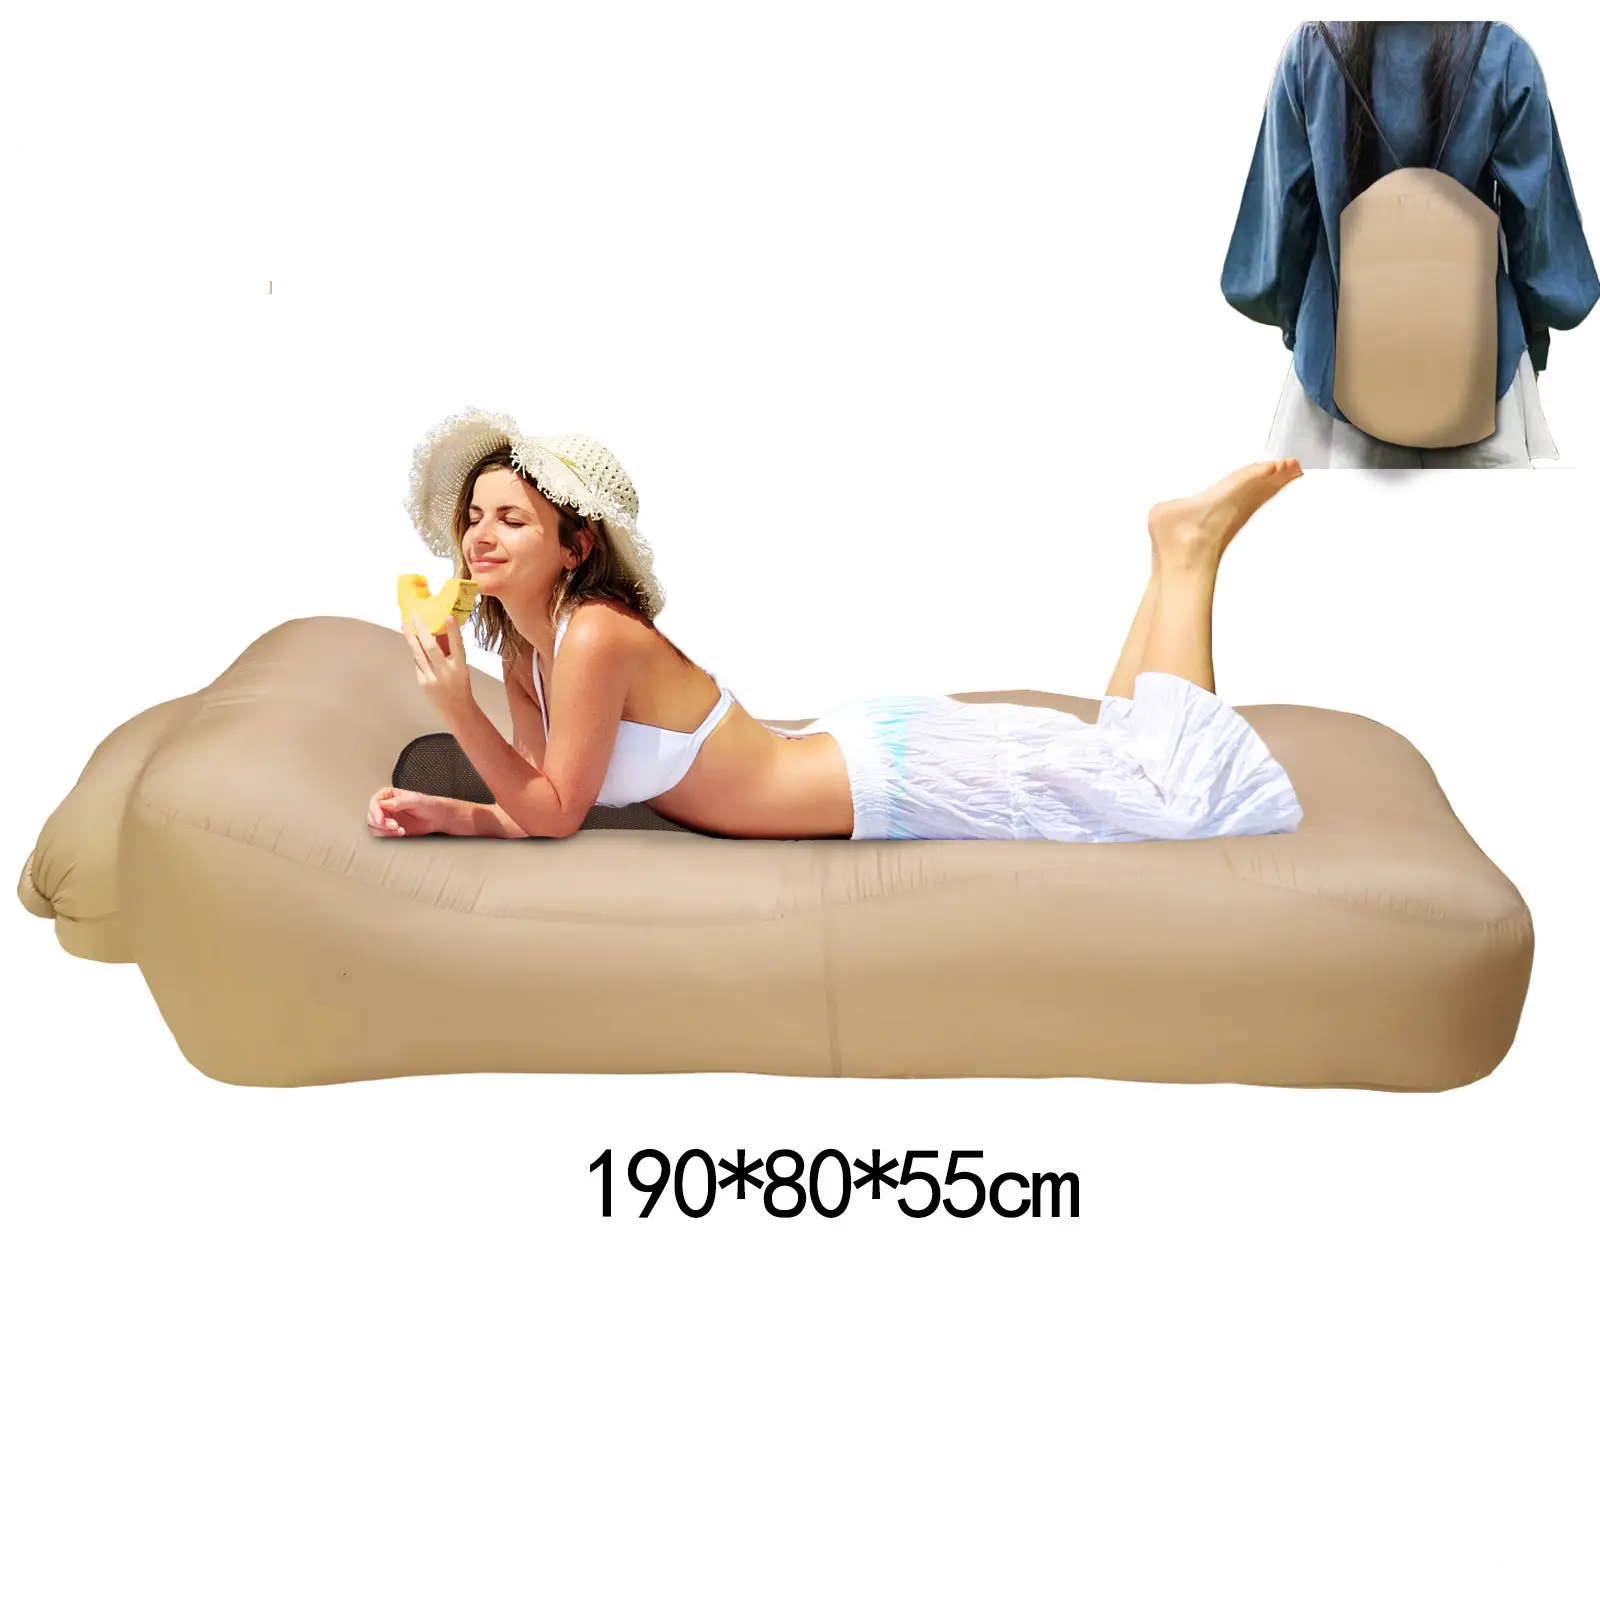 Tumbona inflable para adultos, el mejor sofá perfecto para acampar y hacer senderismo